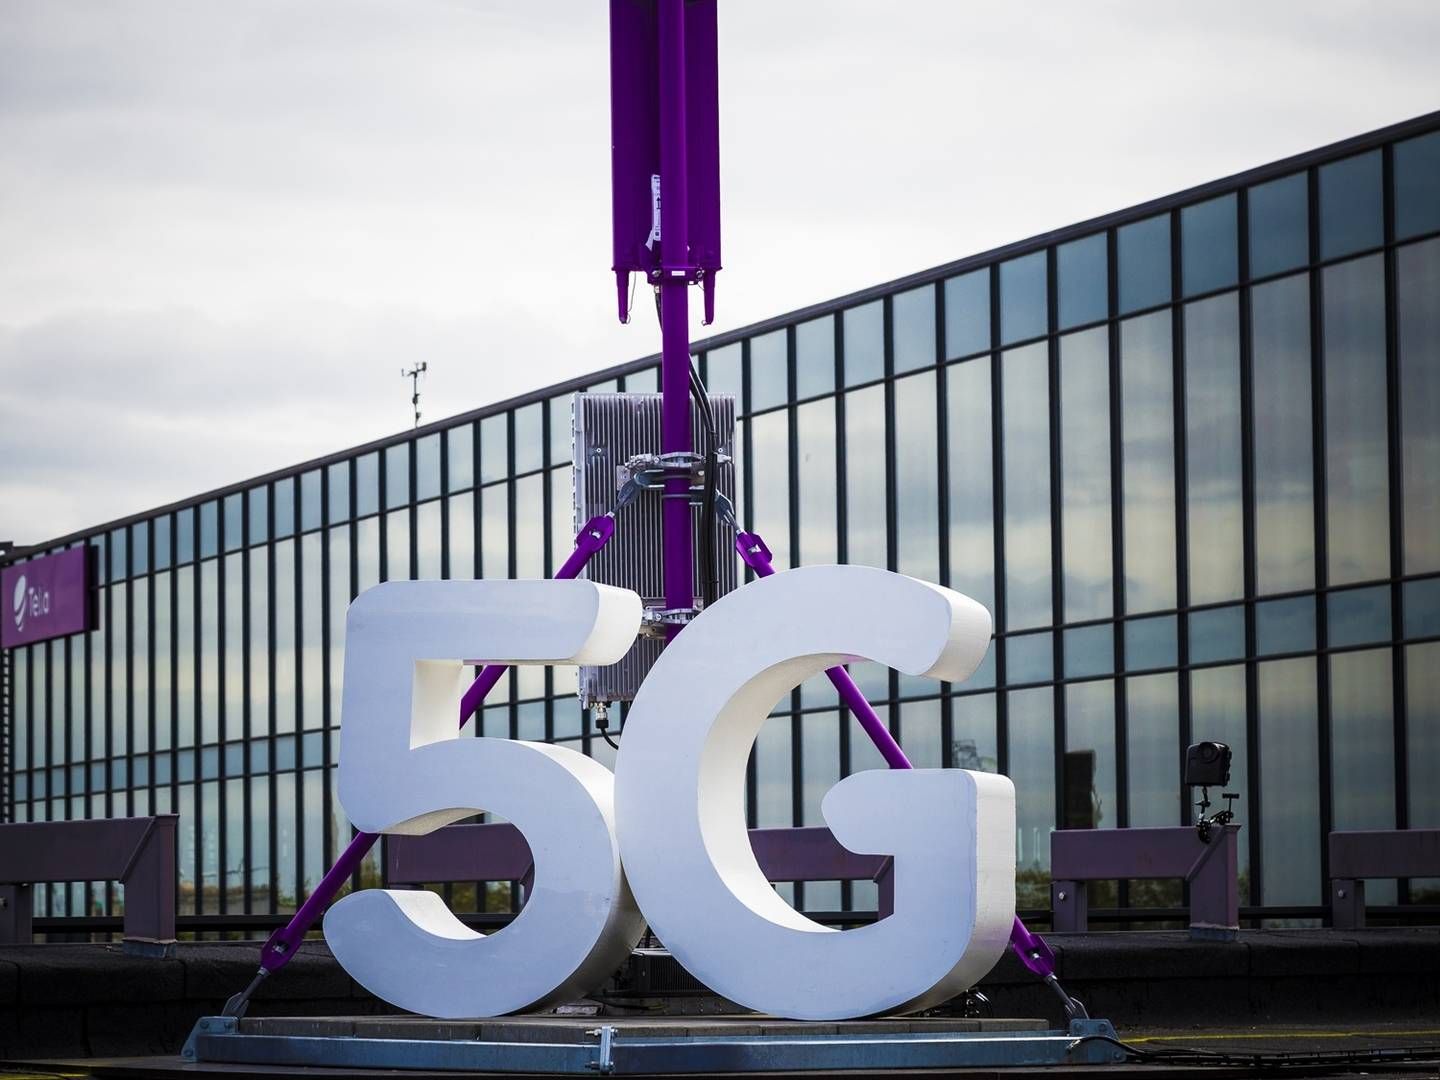 Det er endnu begrænset, hvor brugbart et 5G-netværk vil være for danske virksomheder. Men det kan ændre sig. | Foto: PR